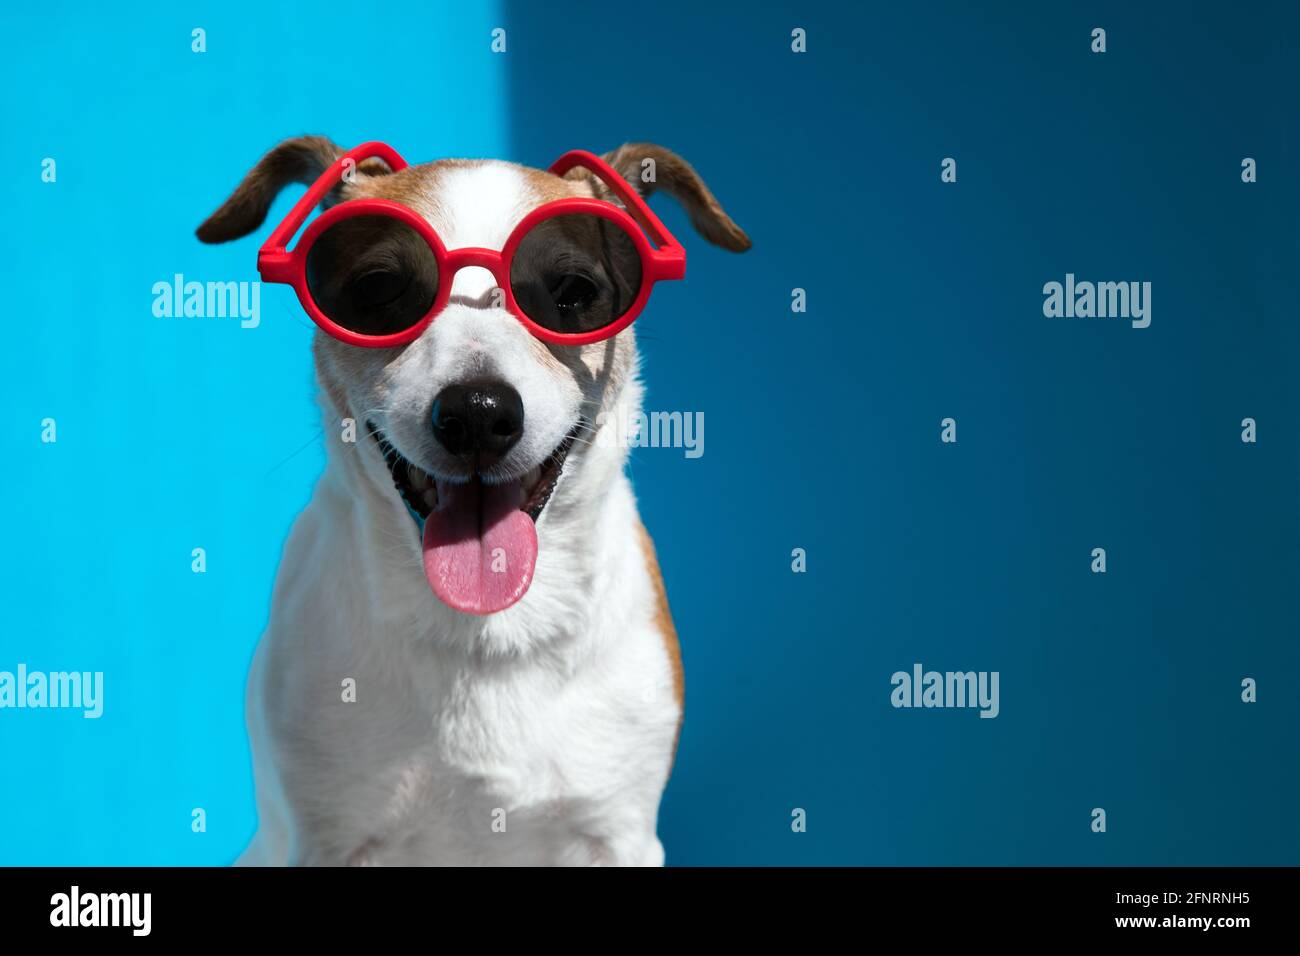 Elegante giovane Jack Russell terrier con occhiali da sole rotondi rossi con la linguetta sporgente guarda la telecamera su uno sfondo azzurro primo piano Foto Stock